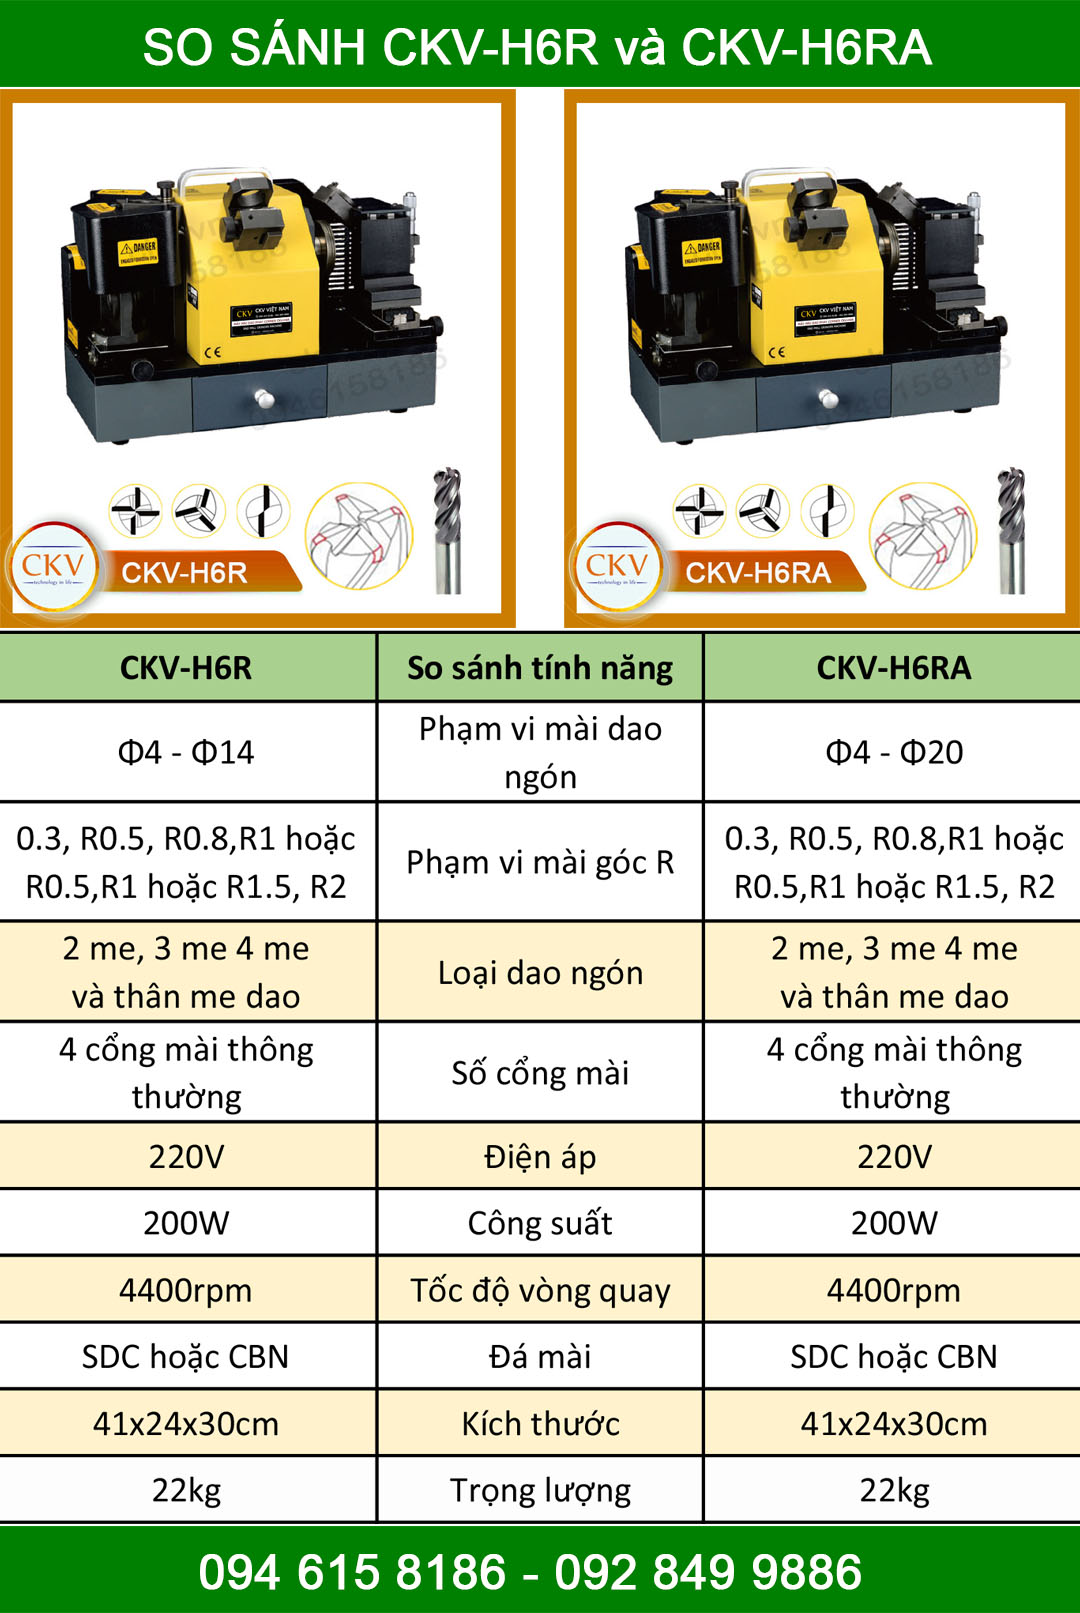 So sánh CKV-H6R và H6RA